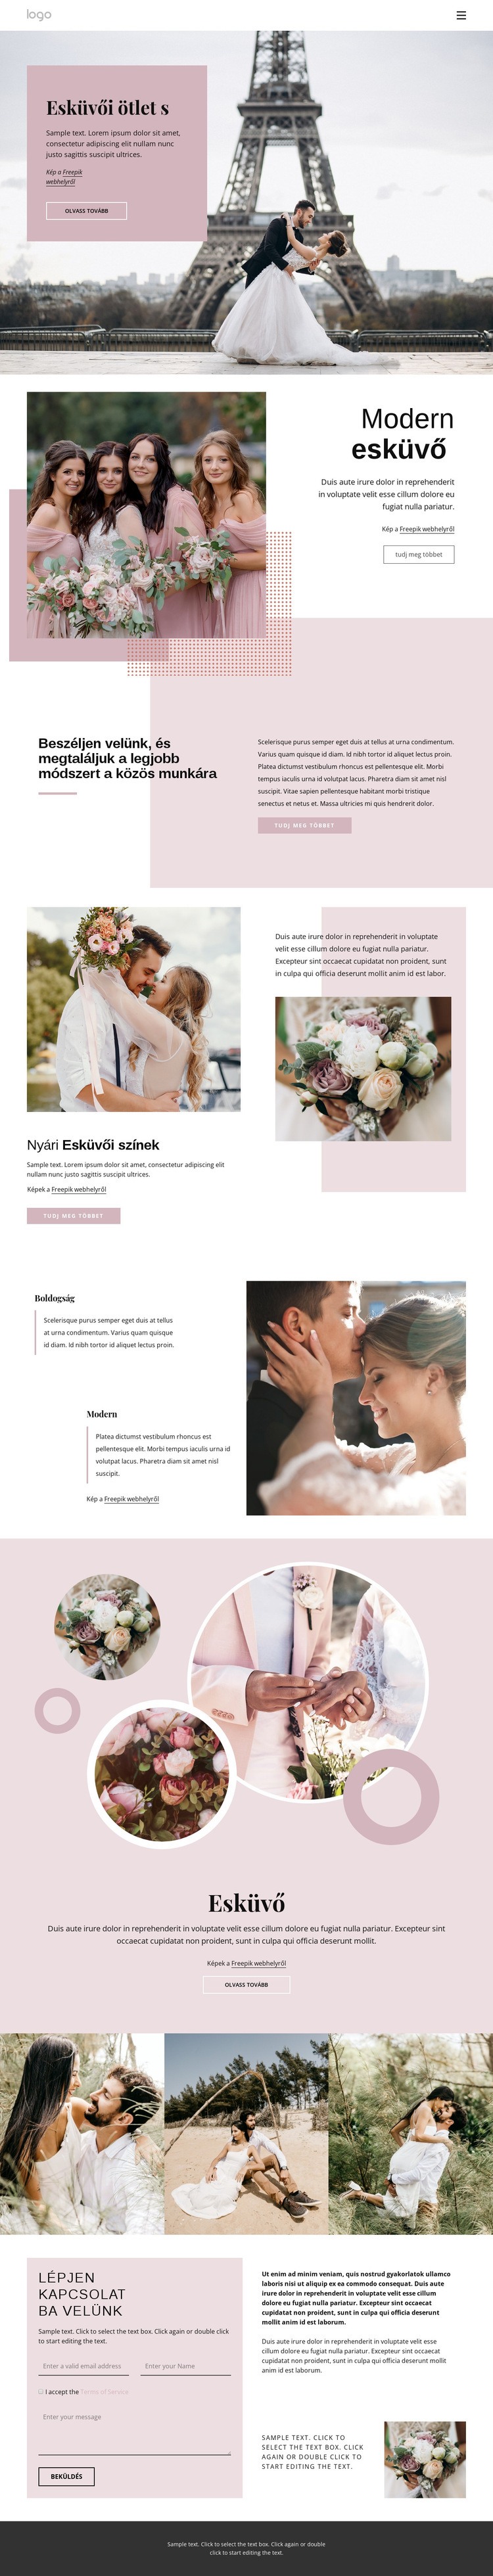 Egyedi esküvői szertartás Weboldal tervezés